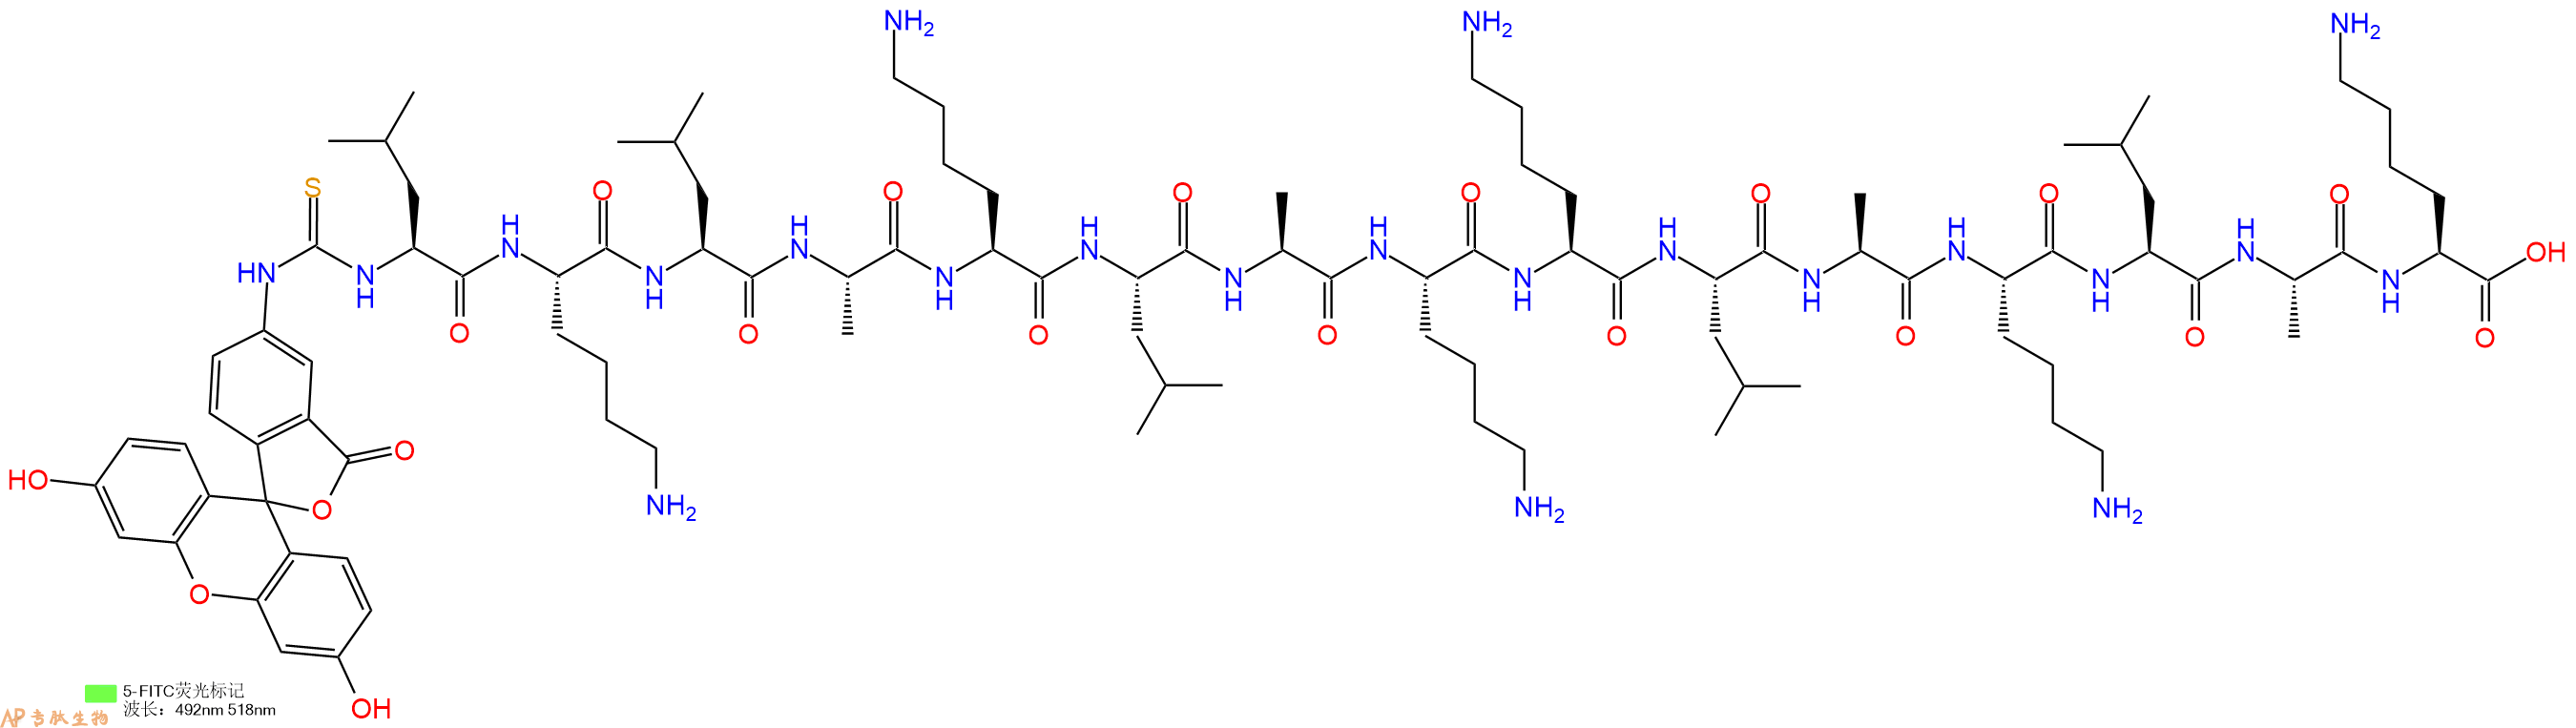 专肽生物产品十五肽Fitc-LKLAKLAKKLAKLAK